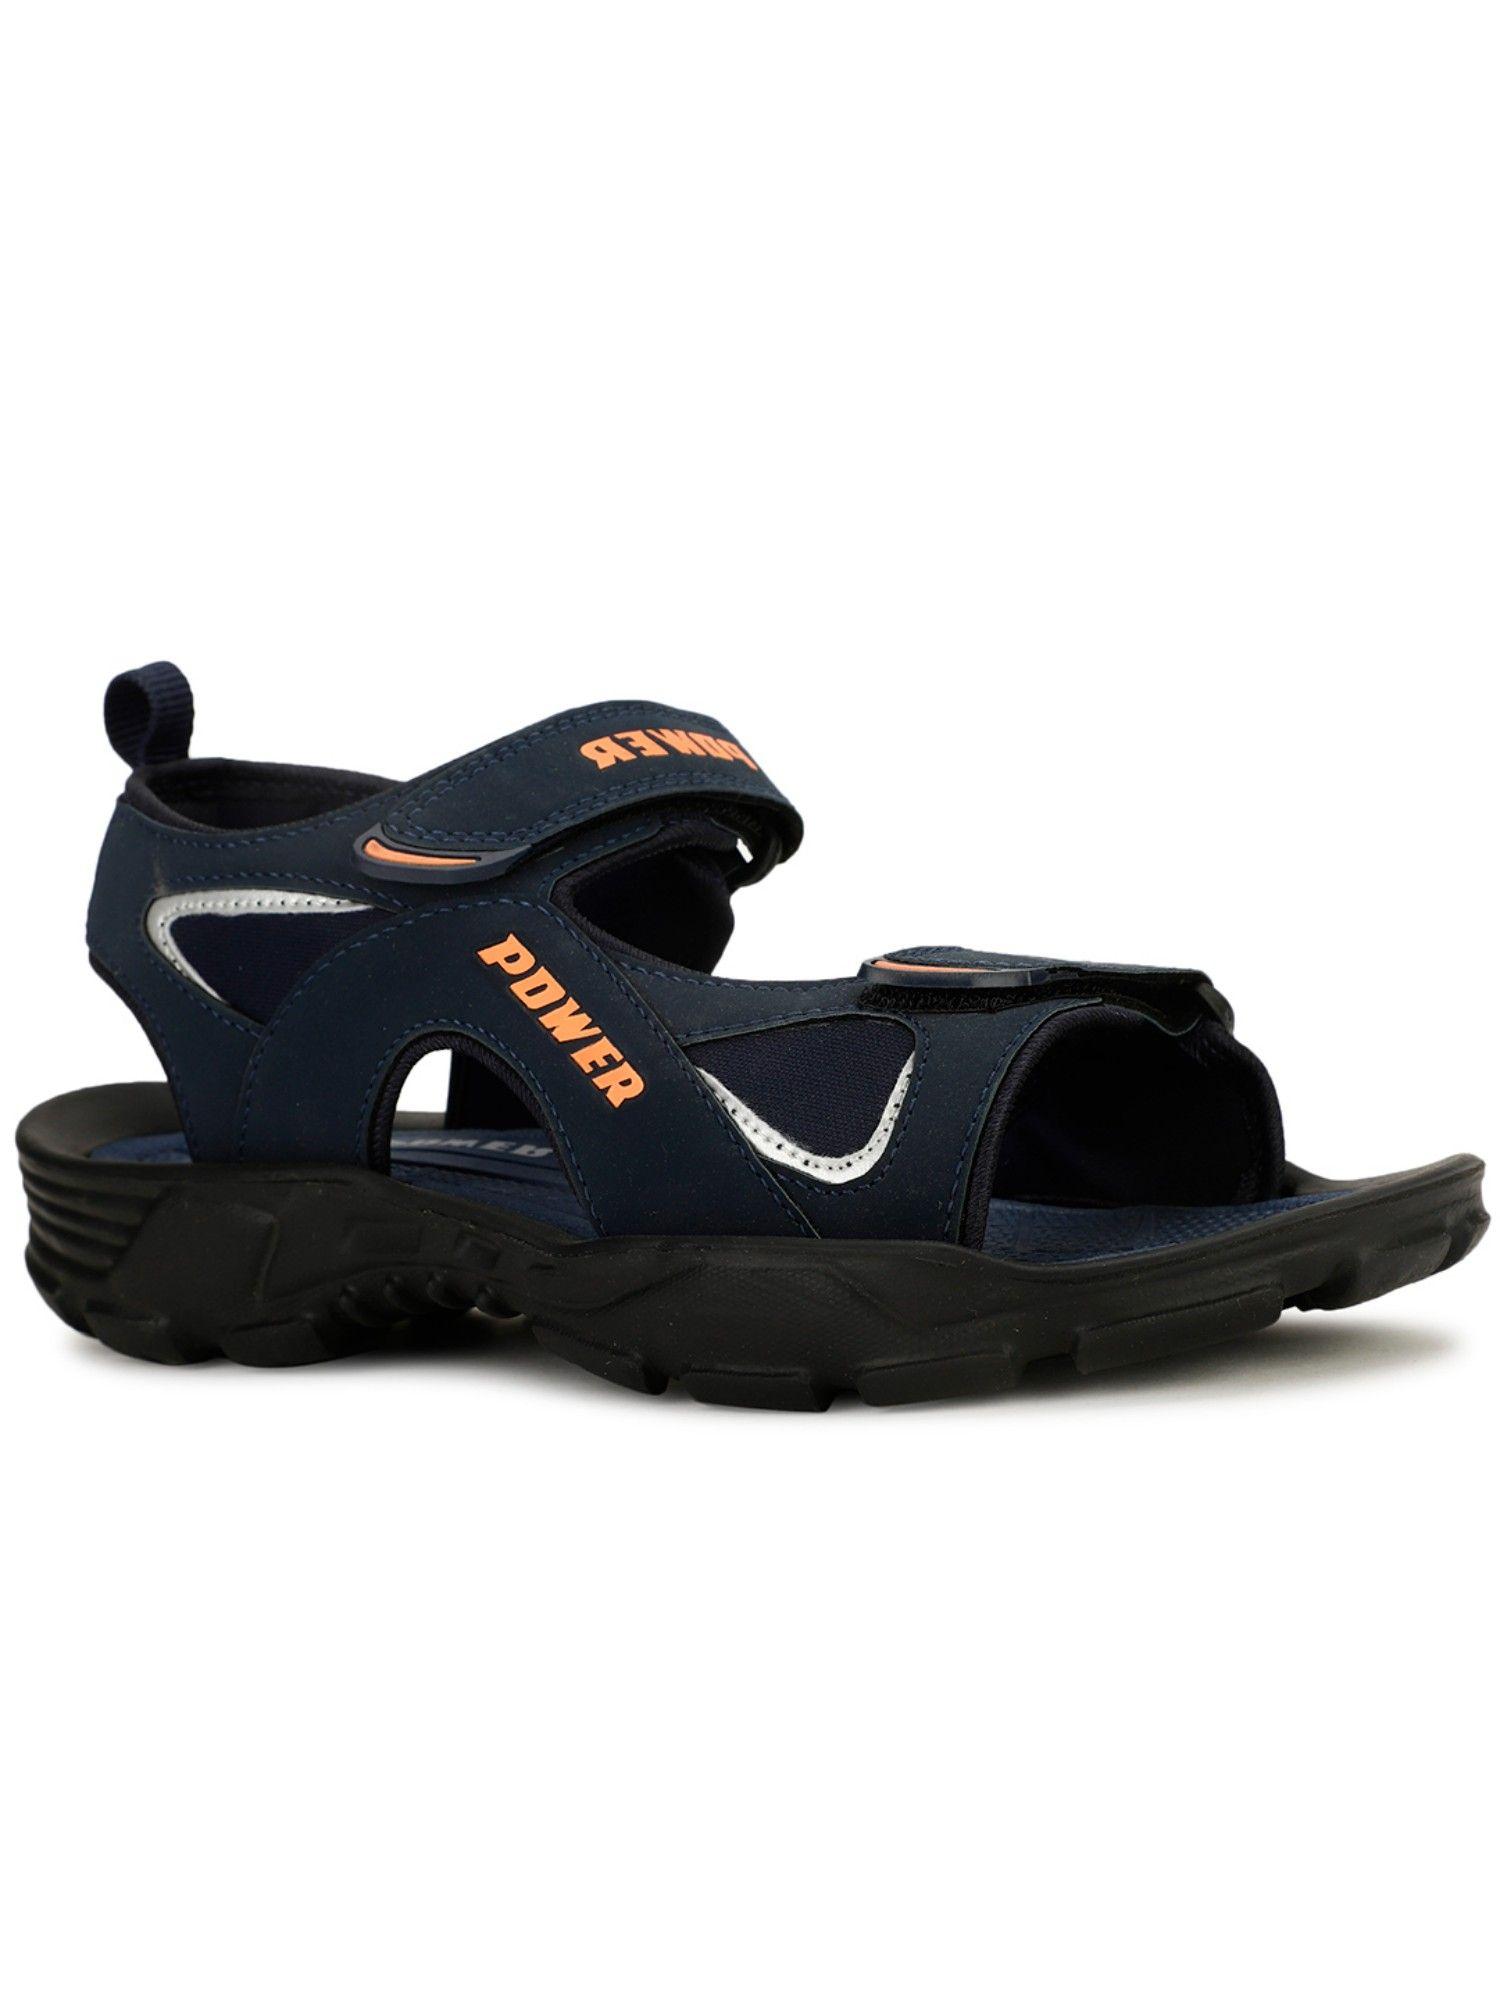 men-navy-sandals